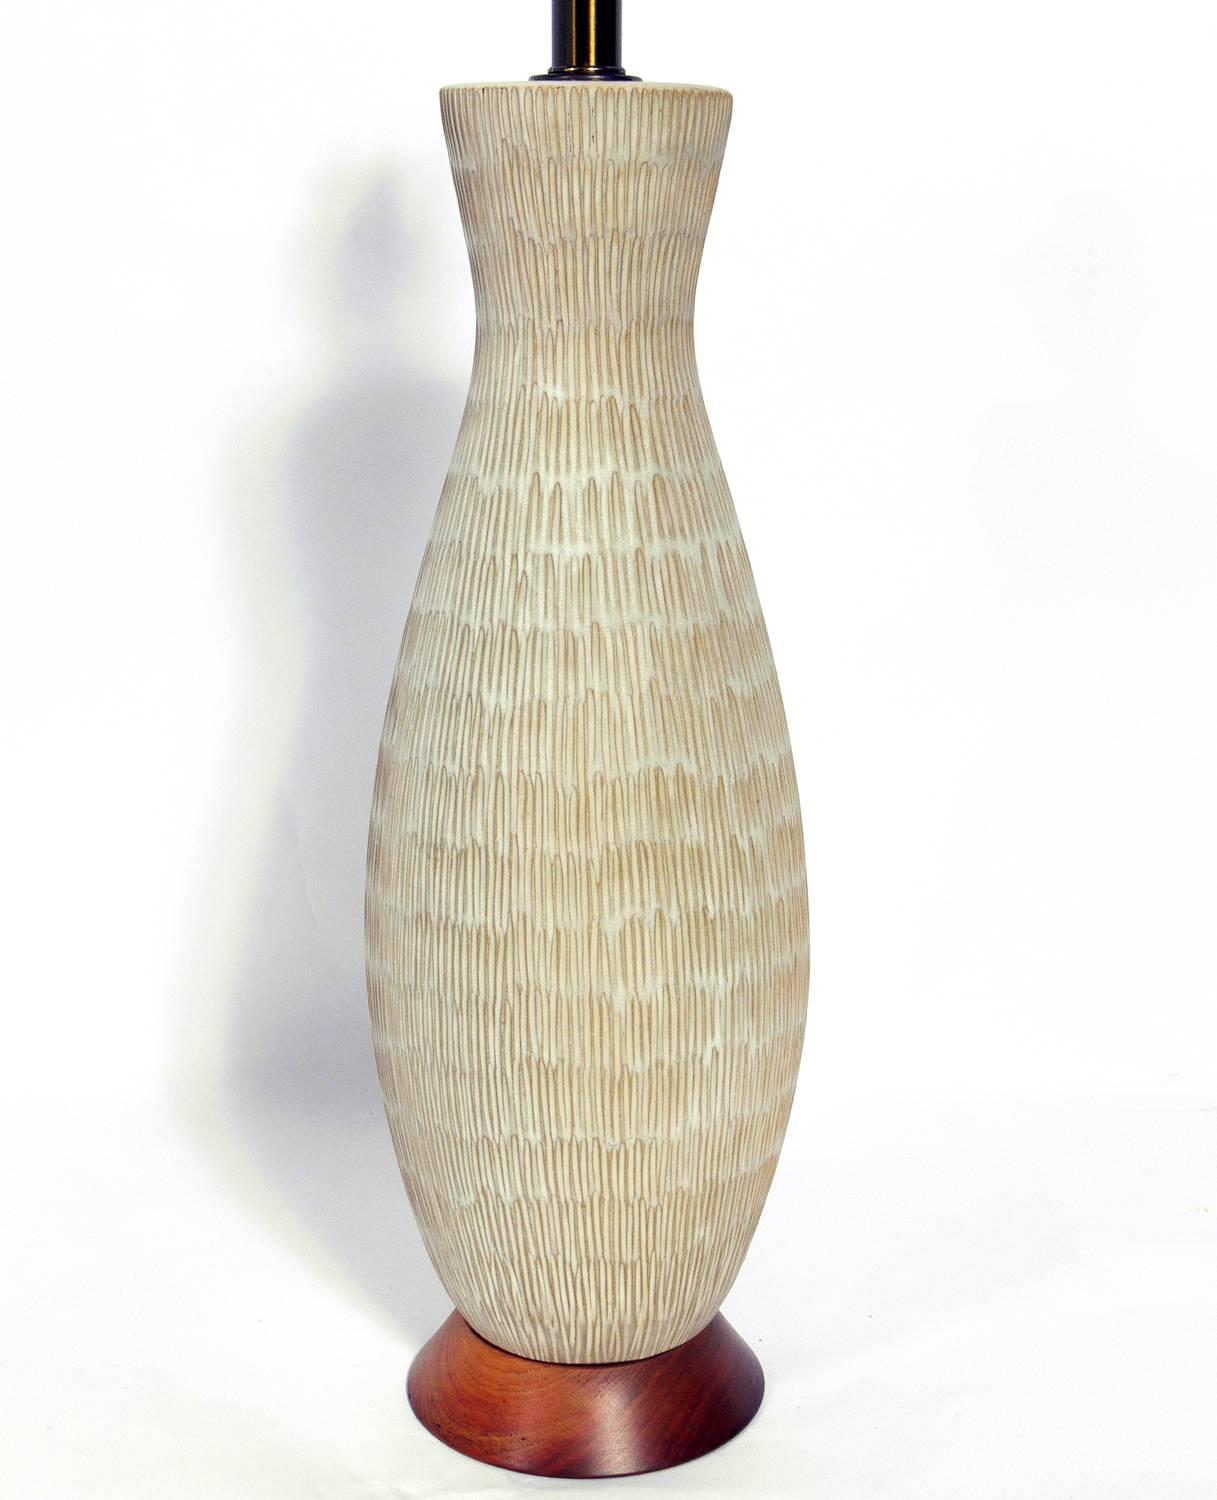 Lampe texturée en céramique aux tons terreux, par Lee Rosen pour Design Technics, américaine, vers les années 1960. Recâblé et prêt à être utilisé. Le prix indiqué ci-dessous comprend la teinte.